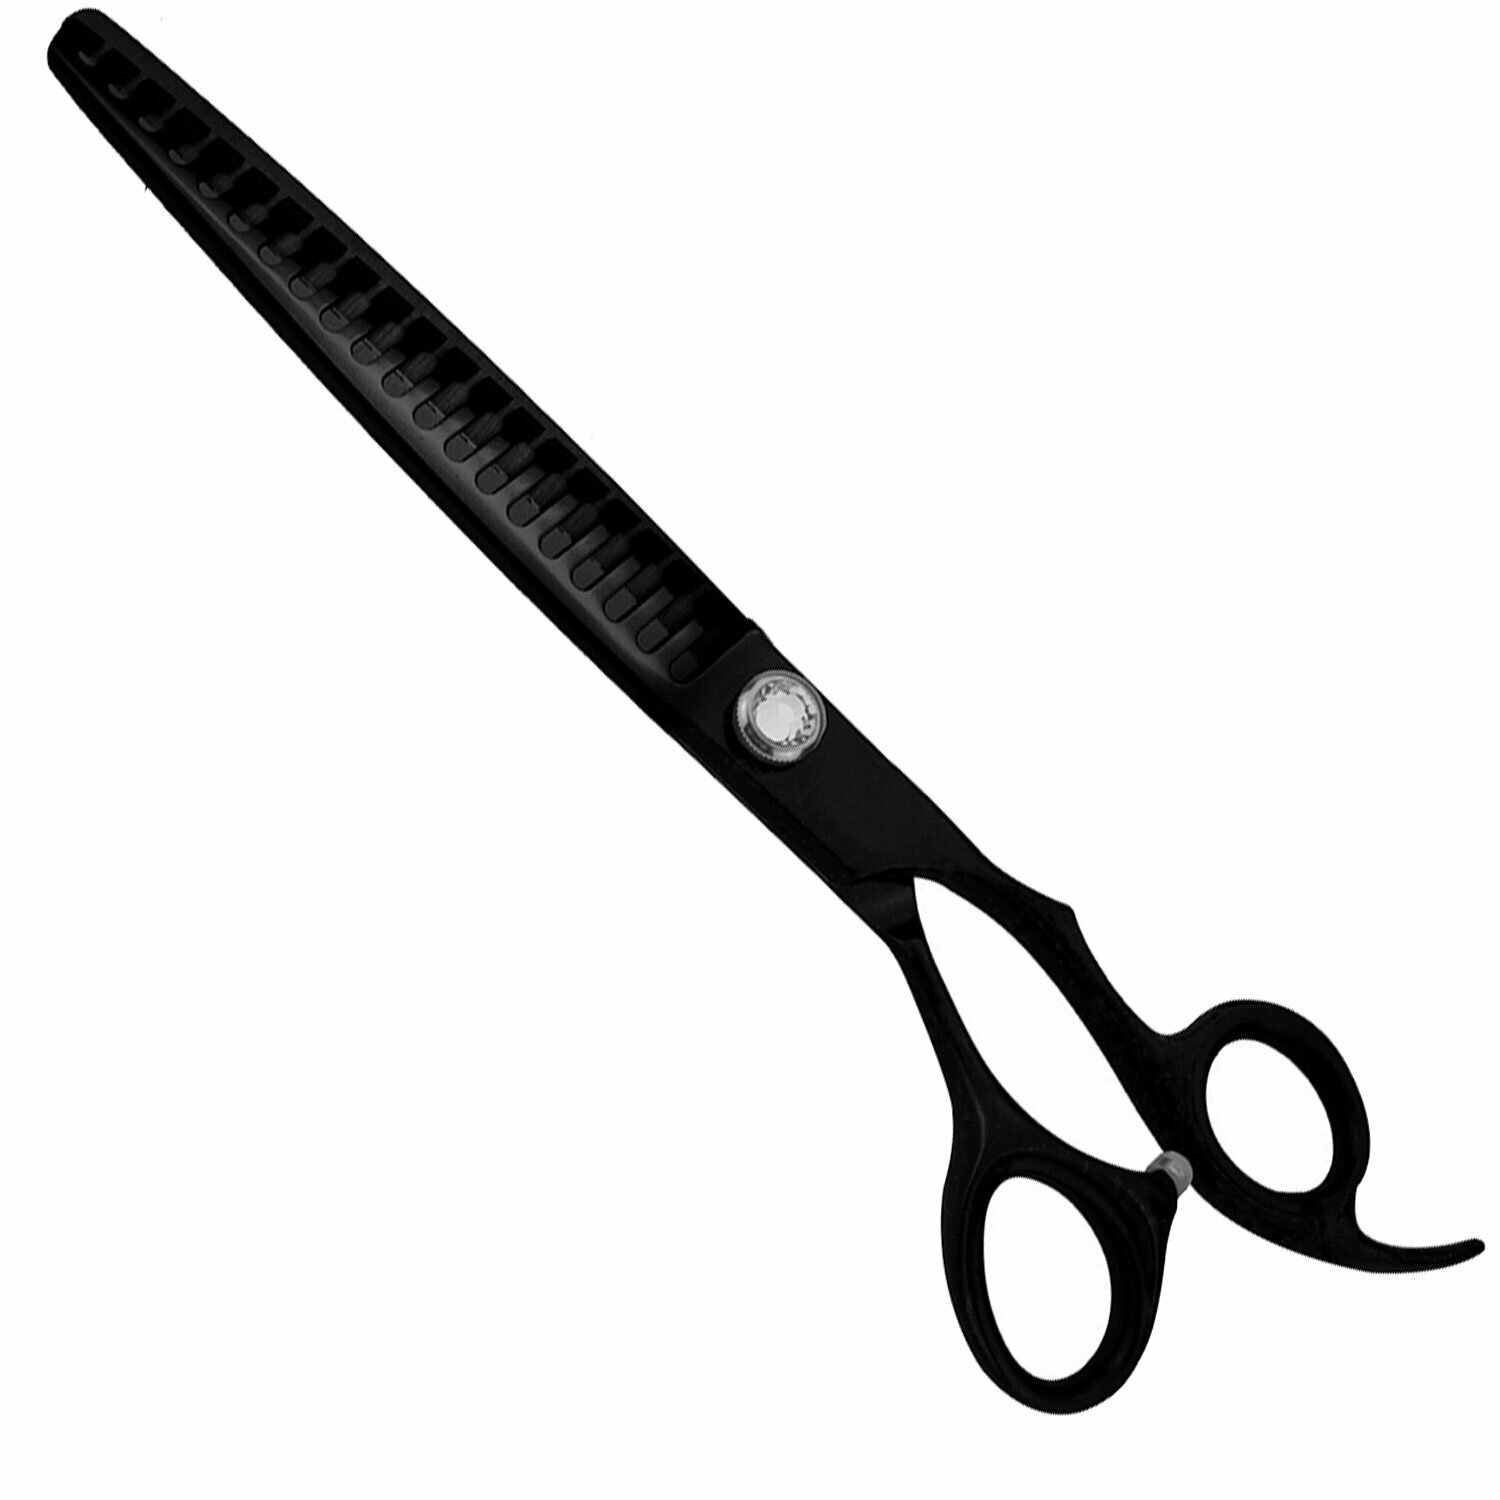 Coarse chunker scissors 19 cm with 20 teeth